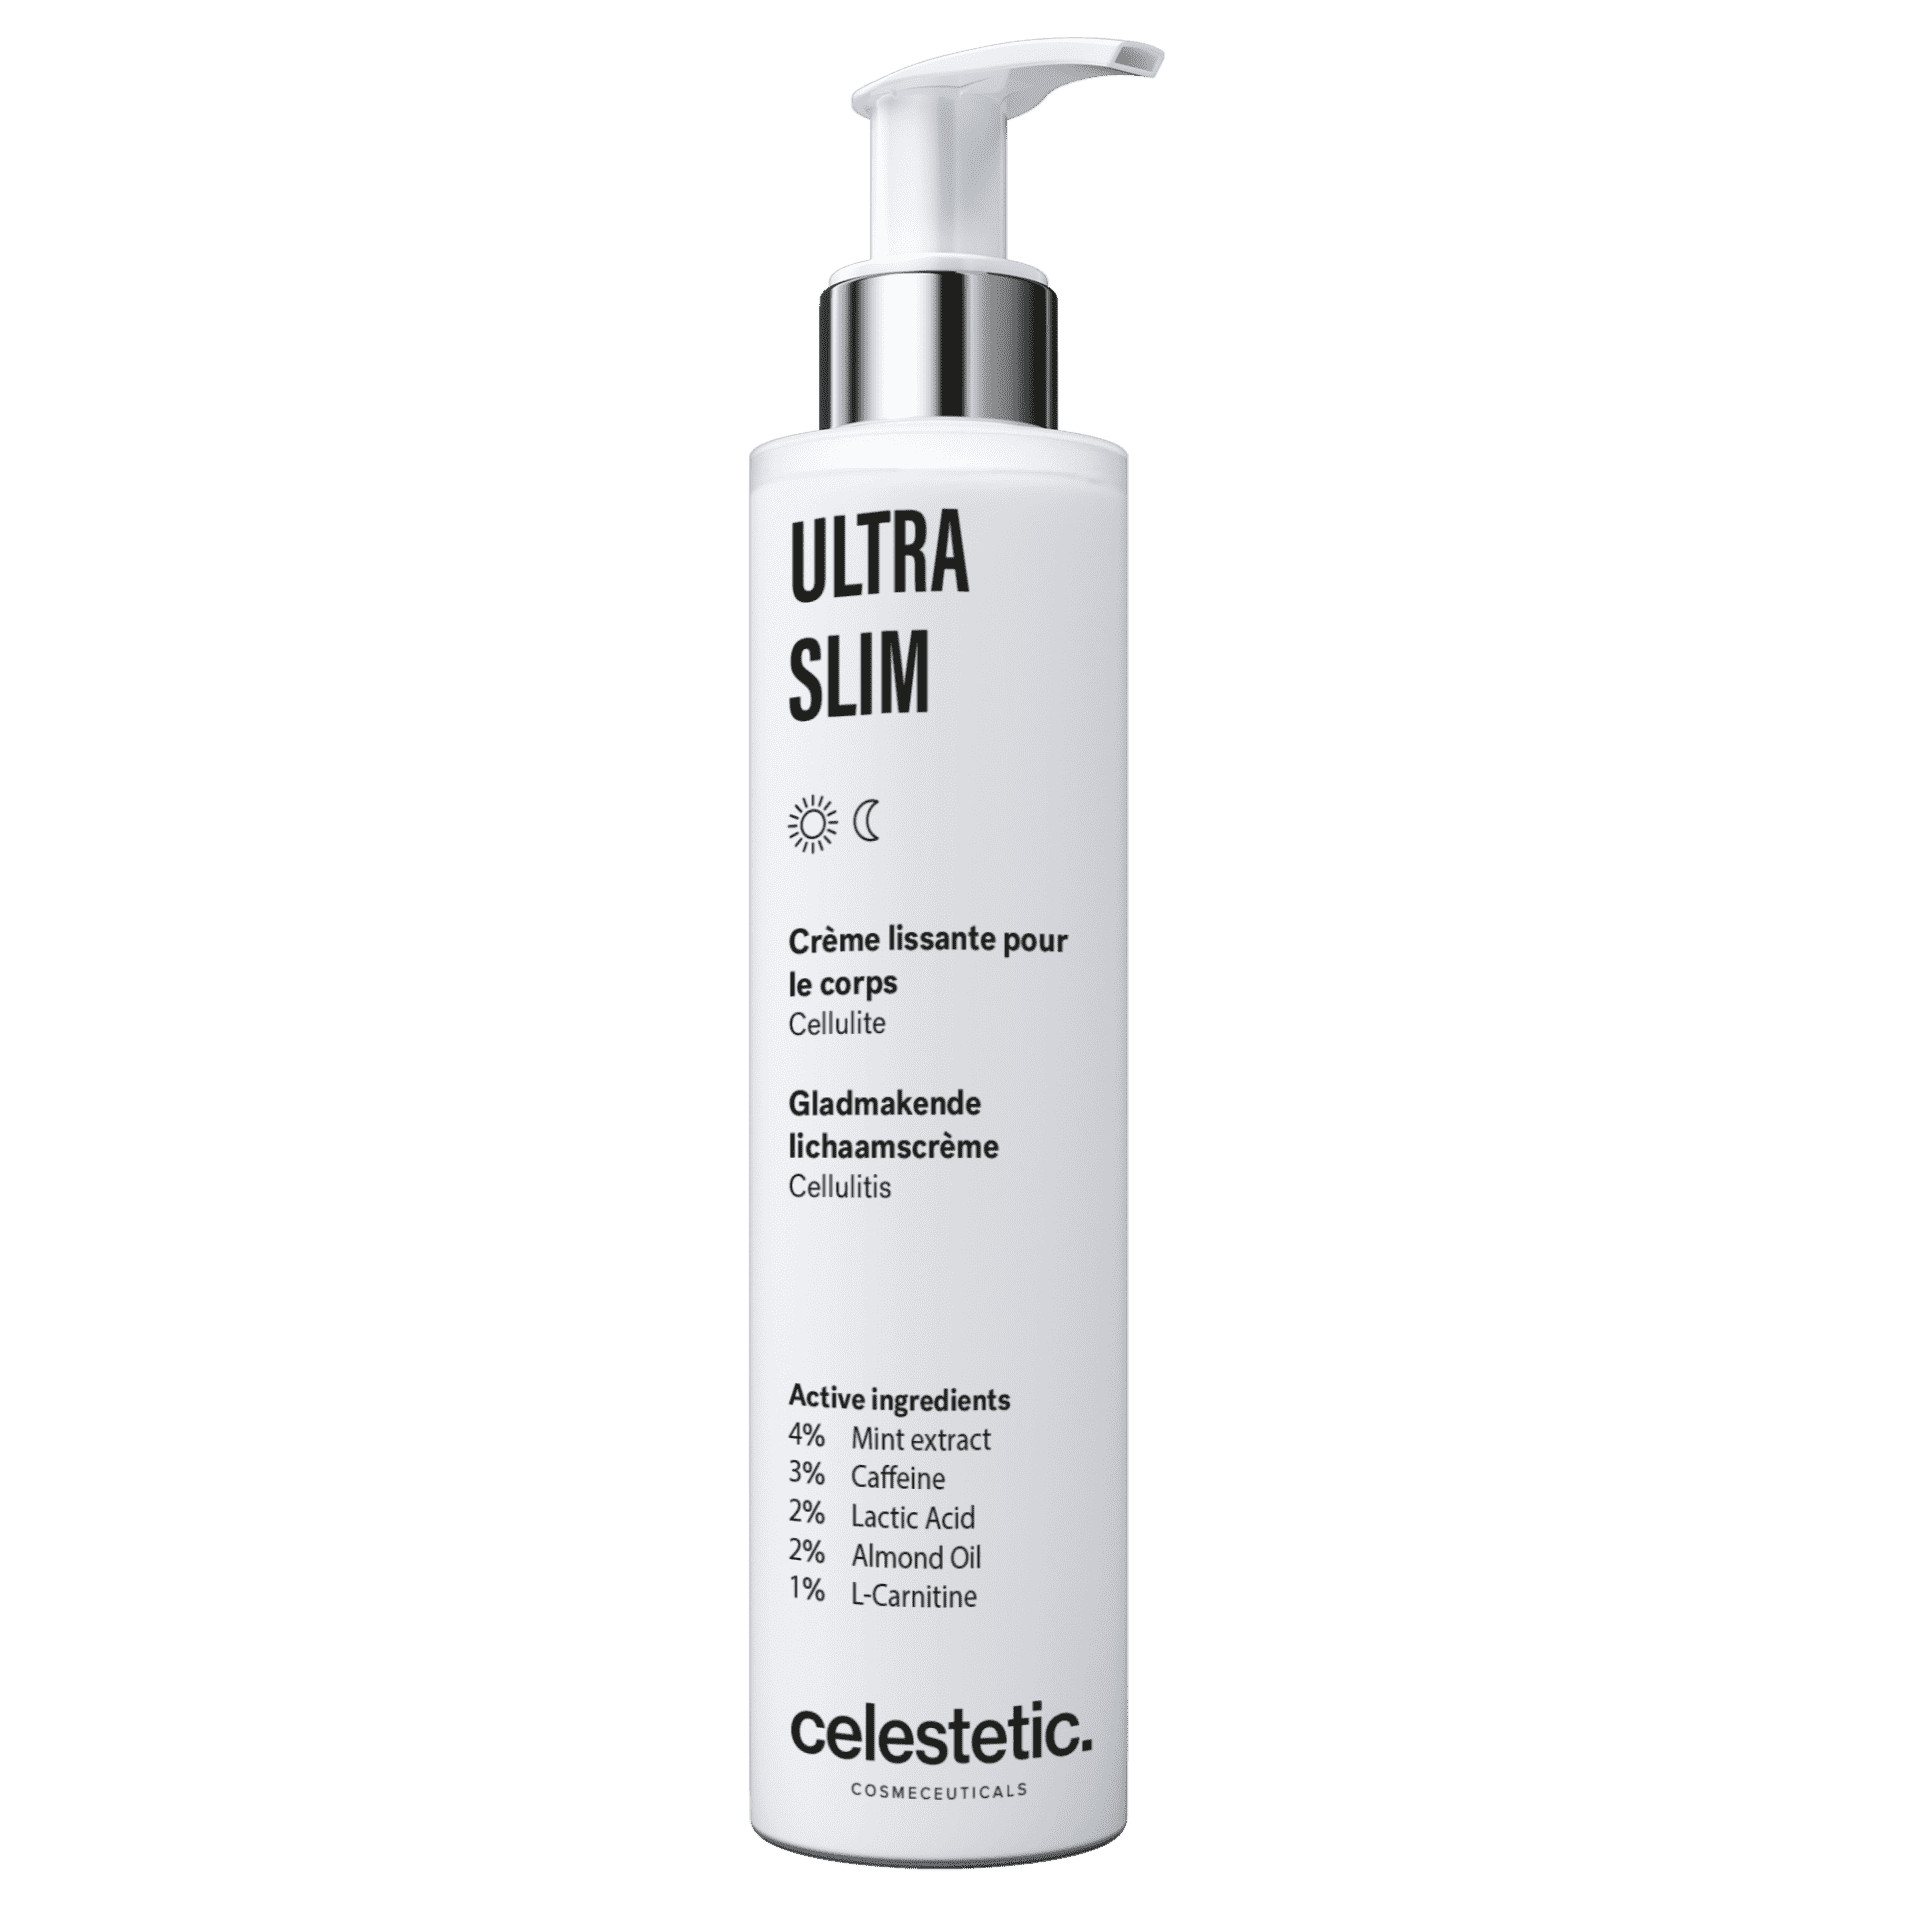 ULTRA SLIM 抗橙皮柔滑緊緻身體潤膚乳霜